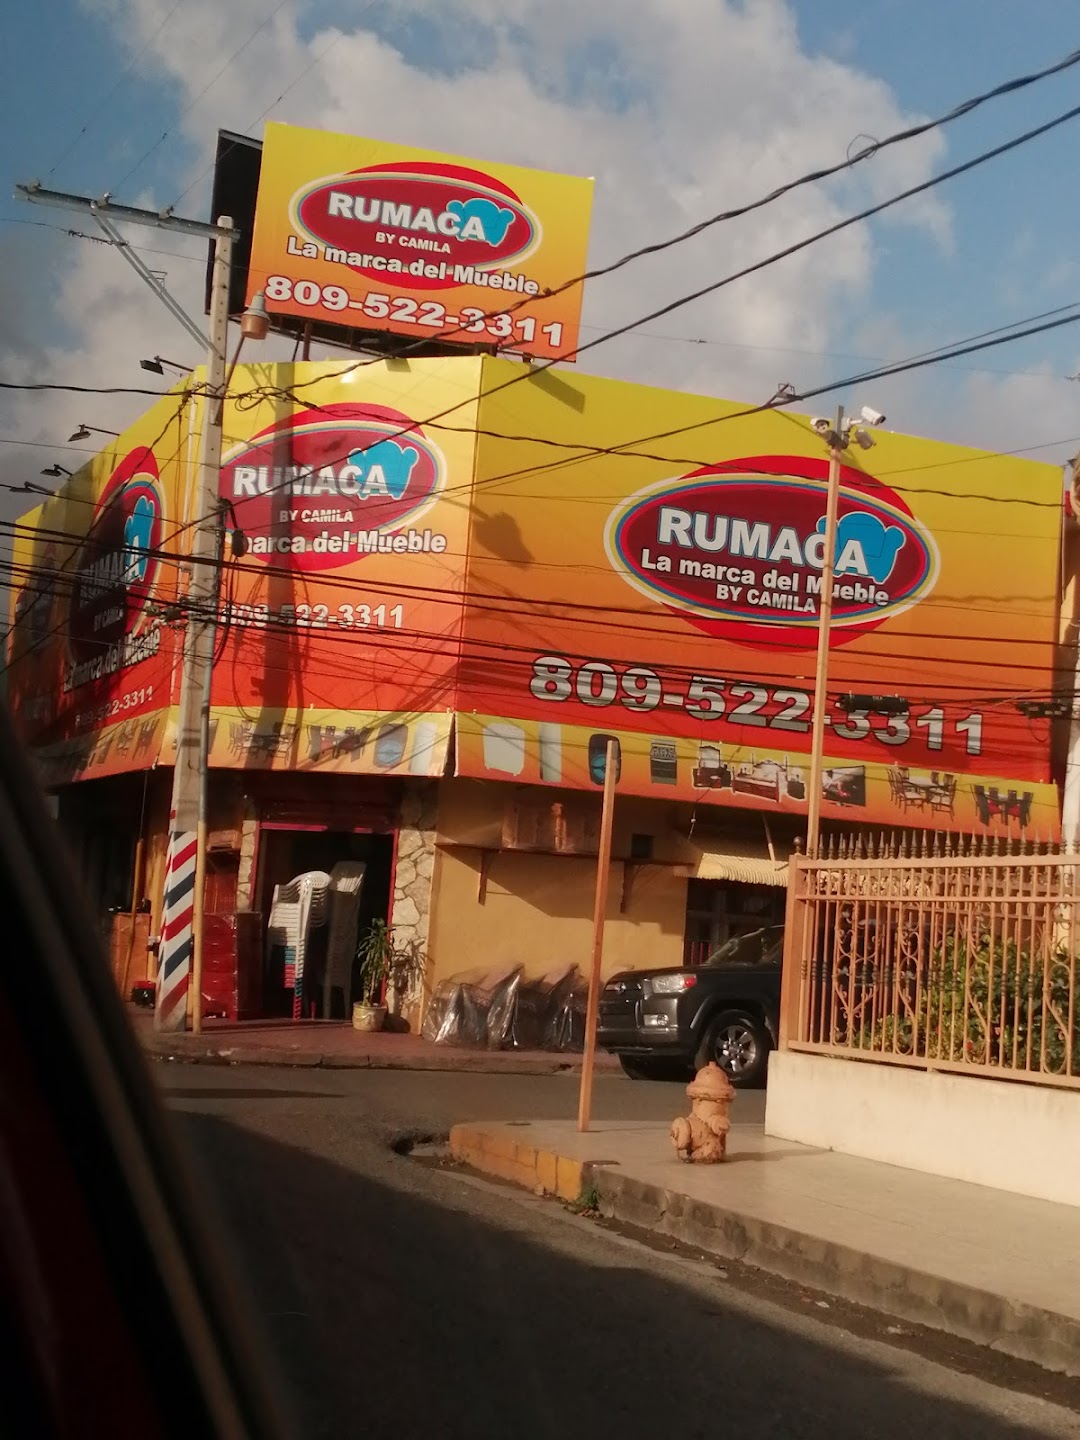 RUMACA MUEBLES BY CAMILA